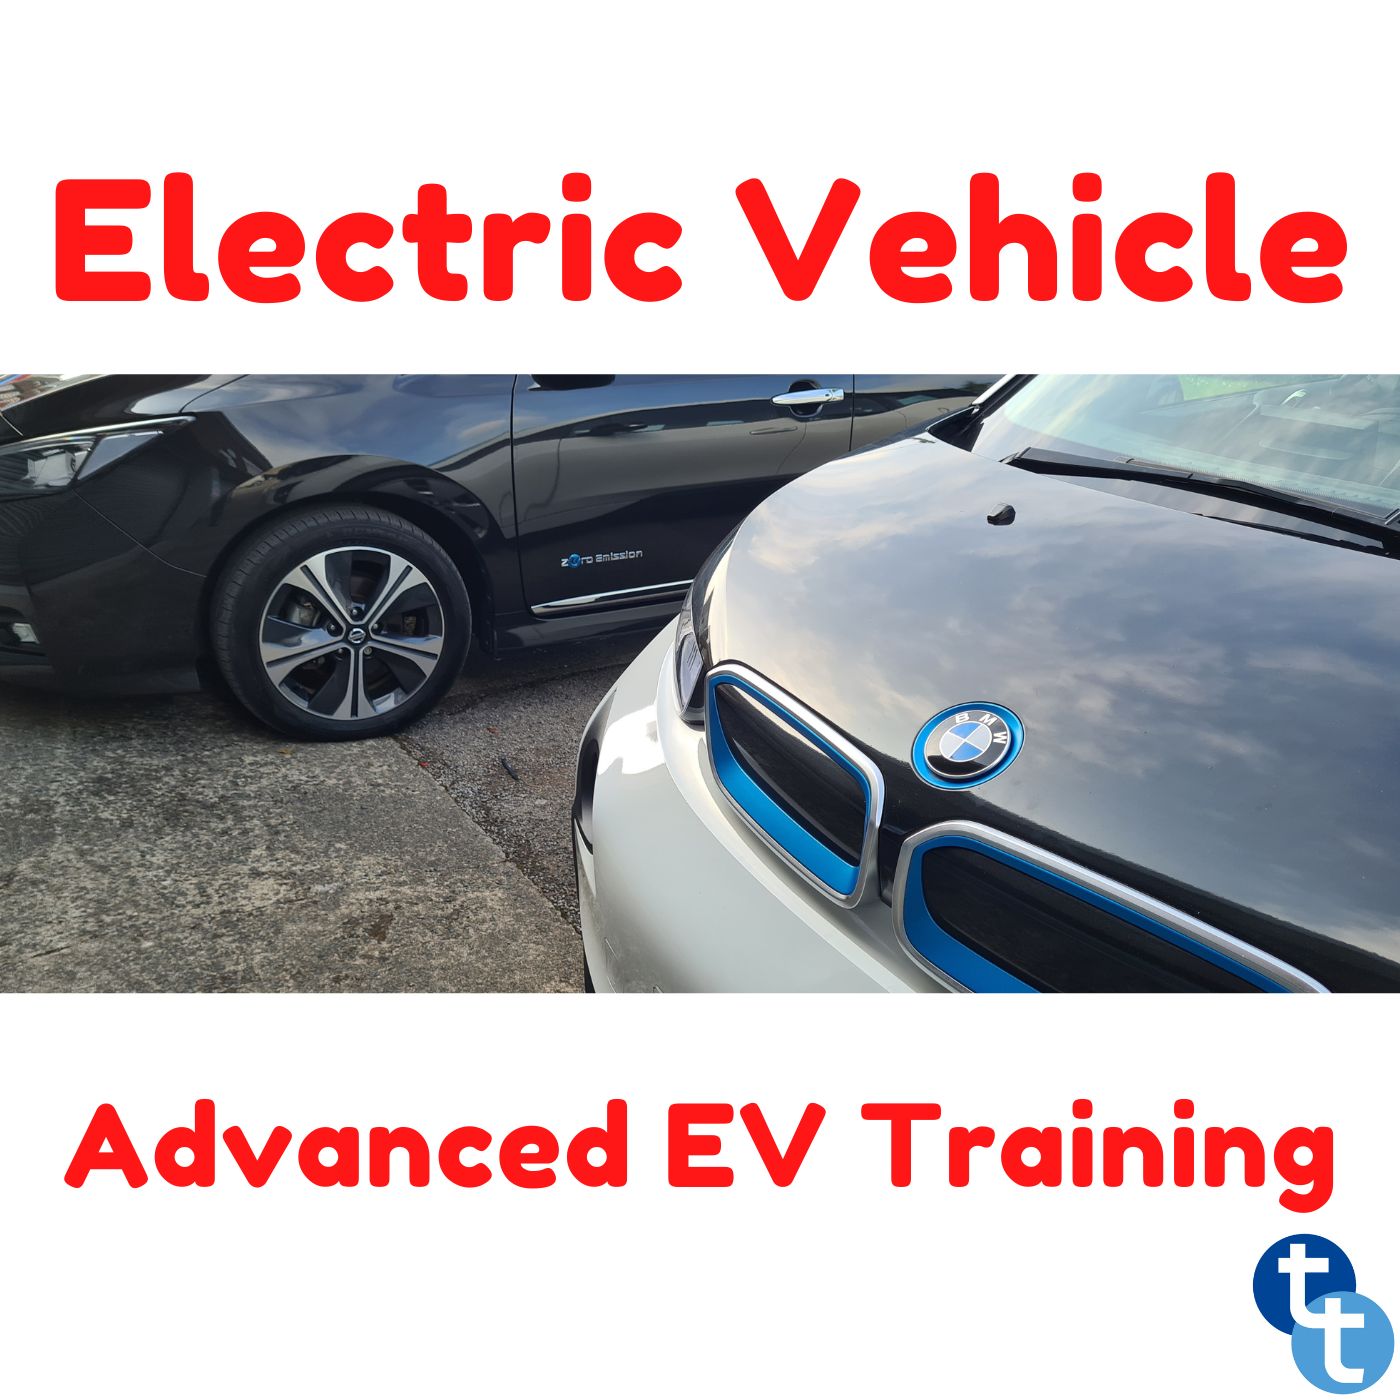 EV L4 Training Course